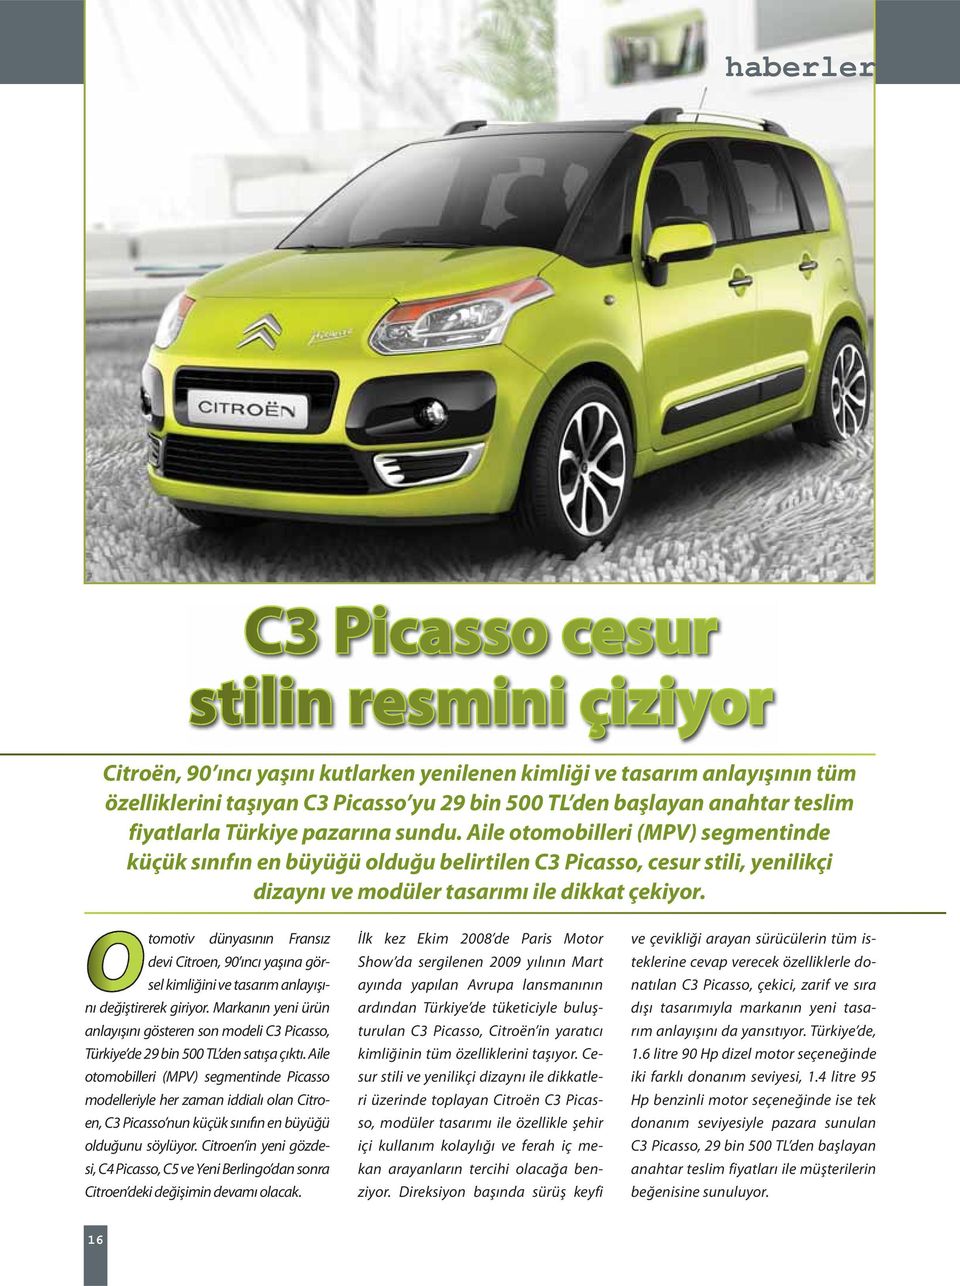 Aile otomobilleri (MPV) segmentinde küçük sınıfın en büyüğü olduğu belirtilen C3 Picasso, cesur stili, yenilikçi dizaynı ve modüler tasarımı ile dikkat çekiyor.